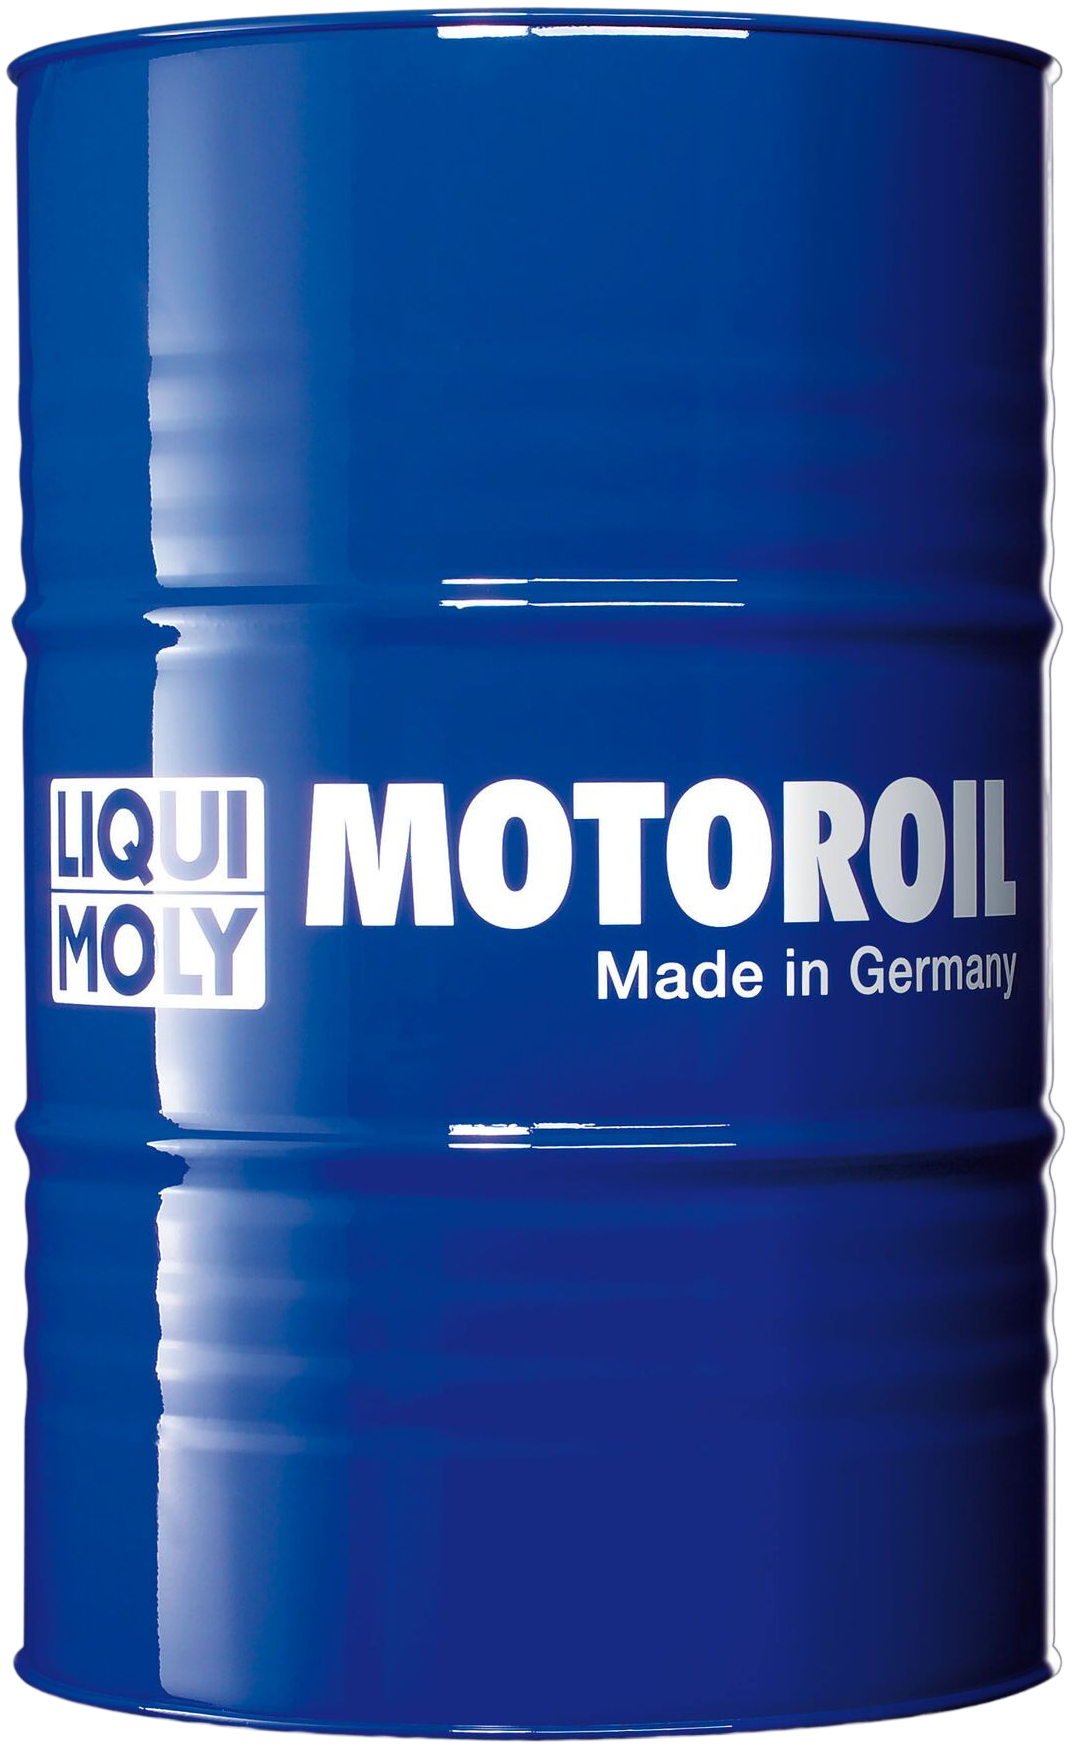 LM2574-205 Vier seizoenen motorolie met modernste formule, gemaakt van speciaal geselecteerde basisoliën.